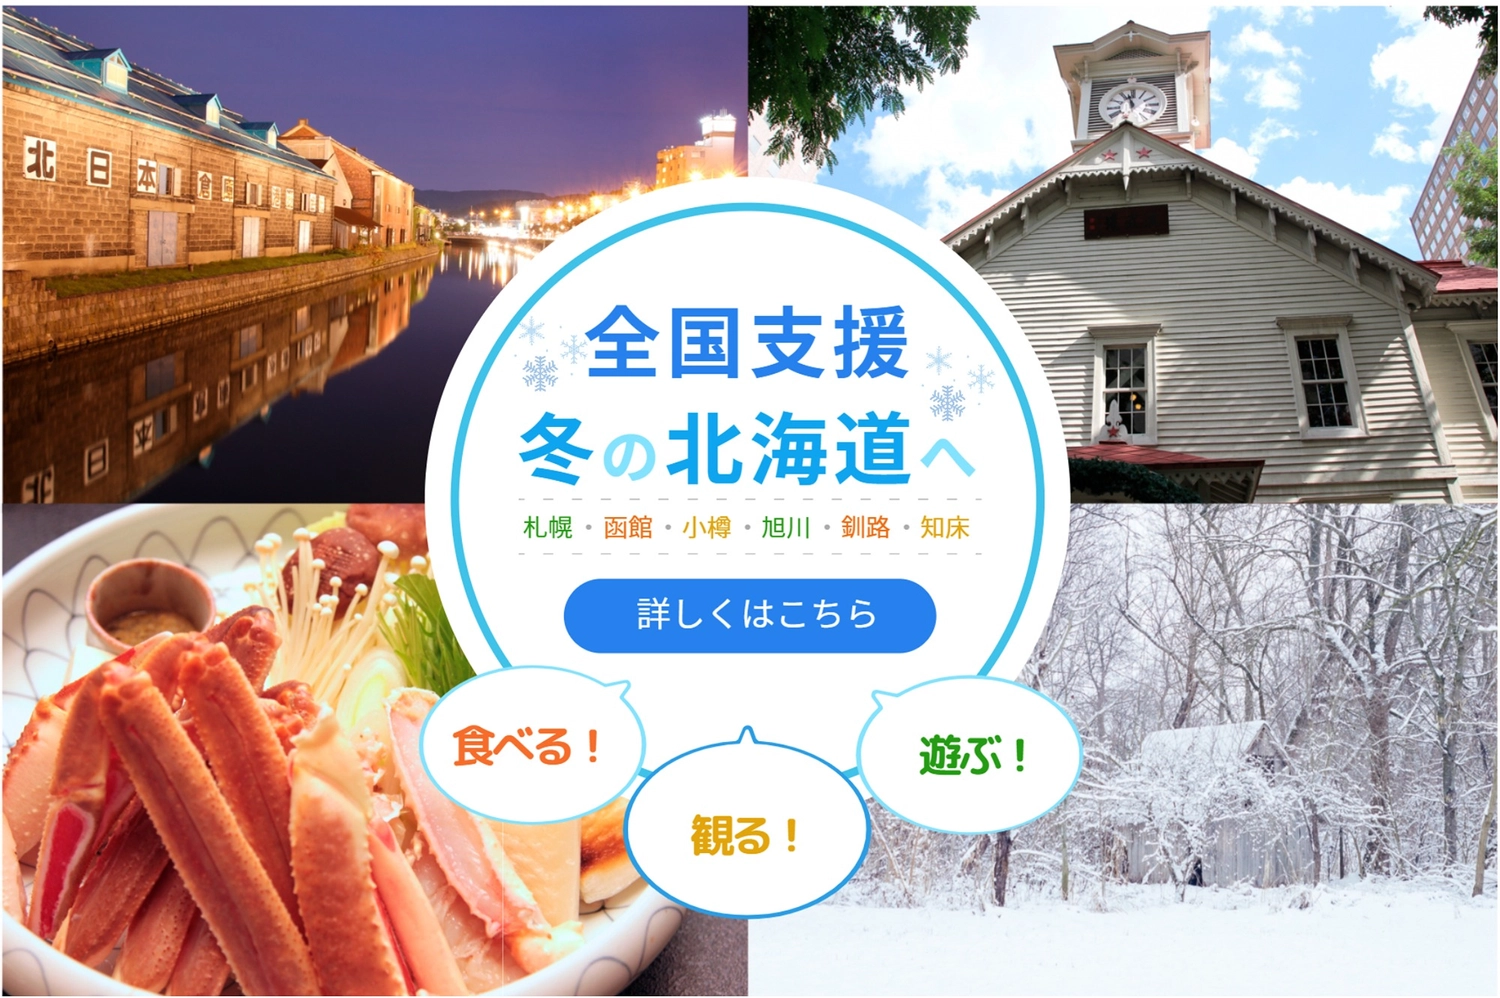 北海道写真満載で全国支援のバナー, mùa đông, cua, tháp đồng hồ, banner mẫu